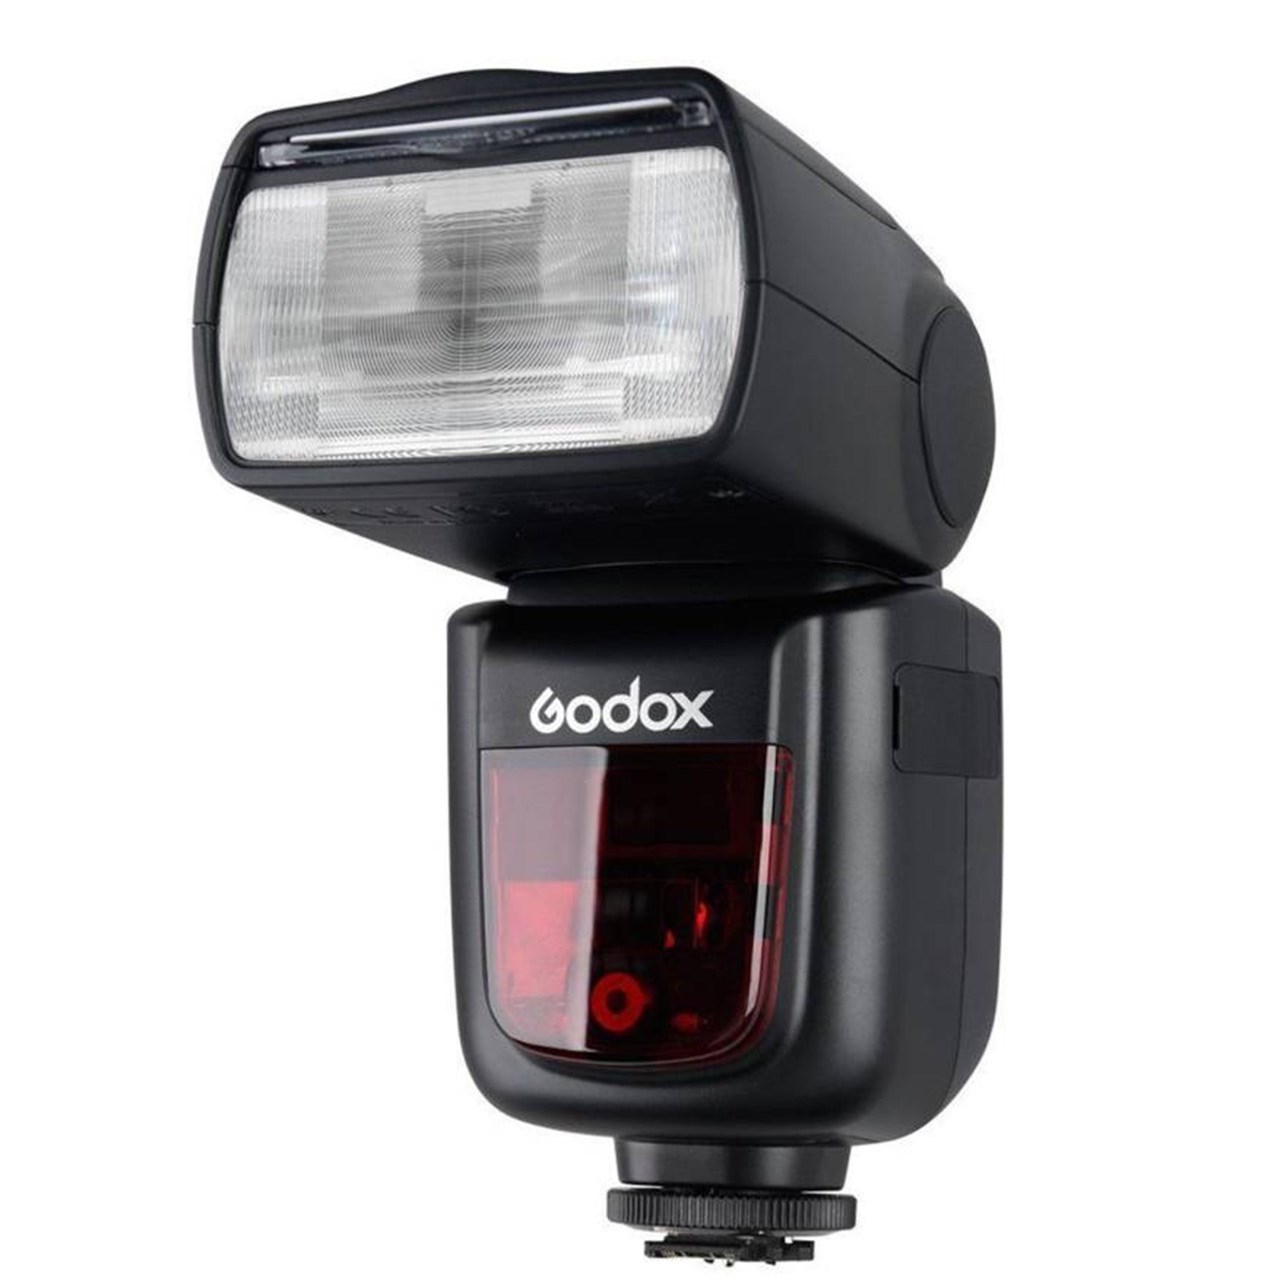 فلاش دوربین گودکس مدل SpeedLite V860 IIN